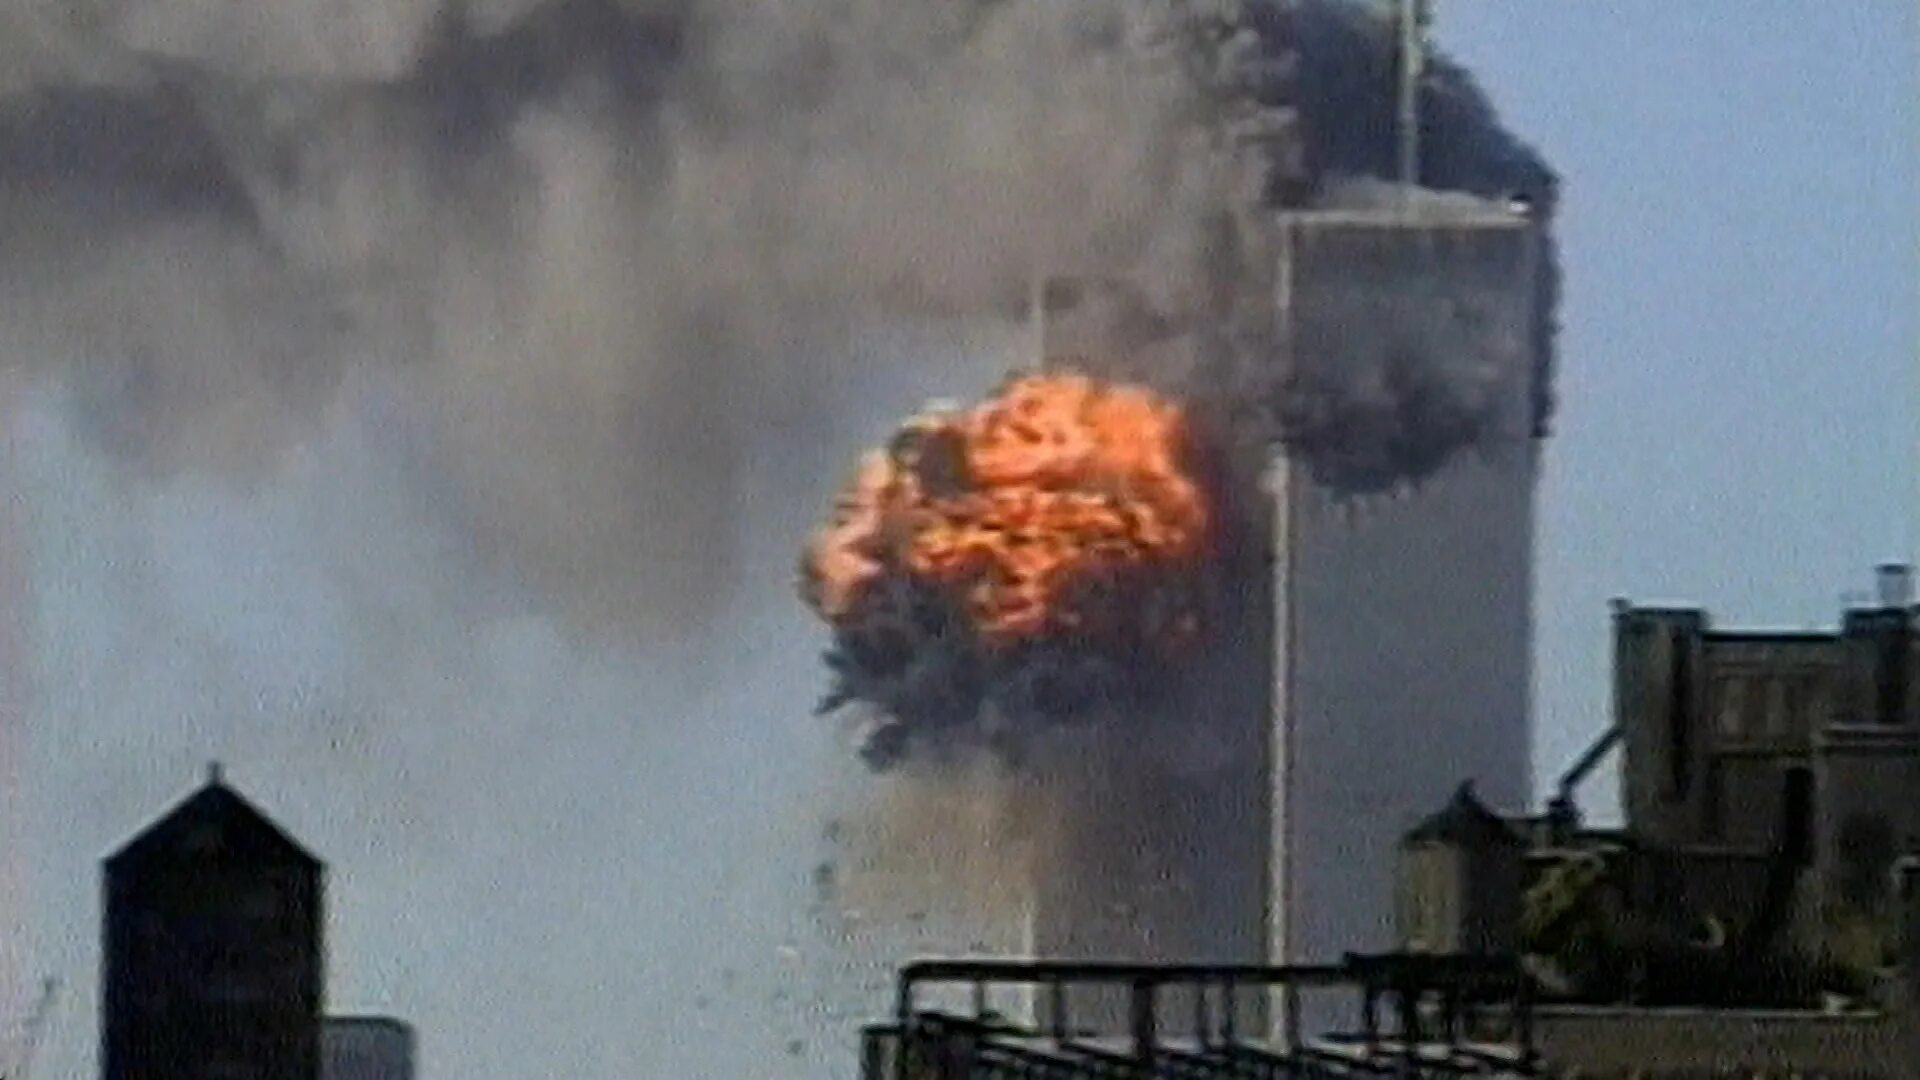 11 Сентября теракт в Америке башни. Теракт 11 сентября в Нью Йорке. Здания Близнецы в Америке 11 сентября.